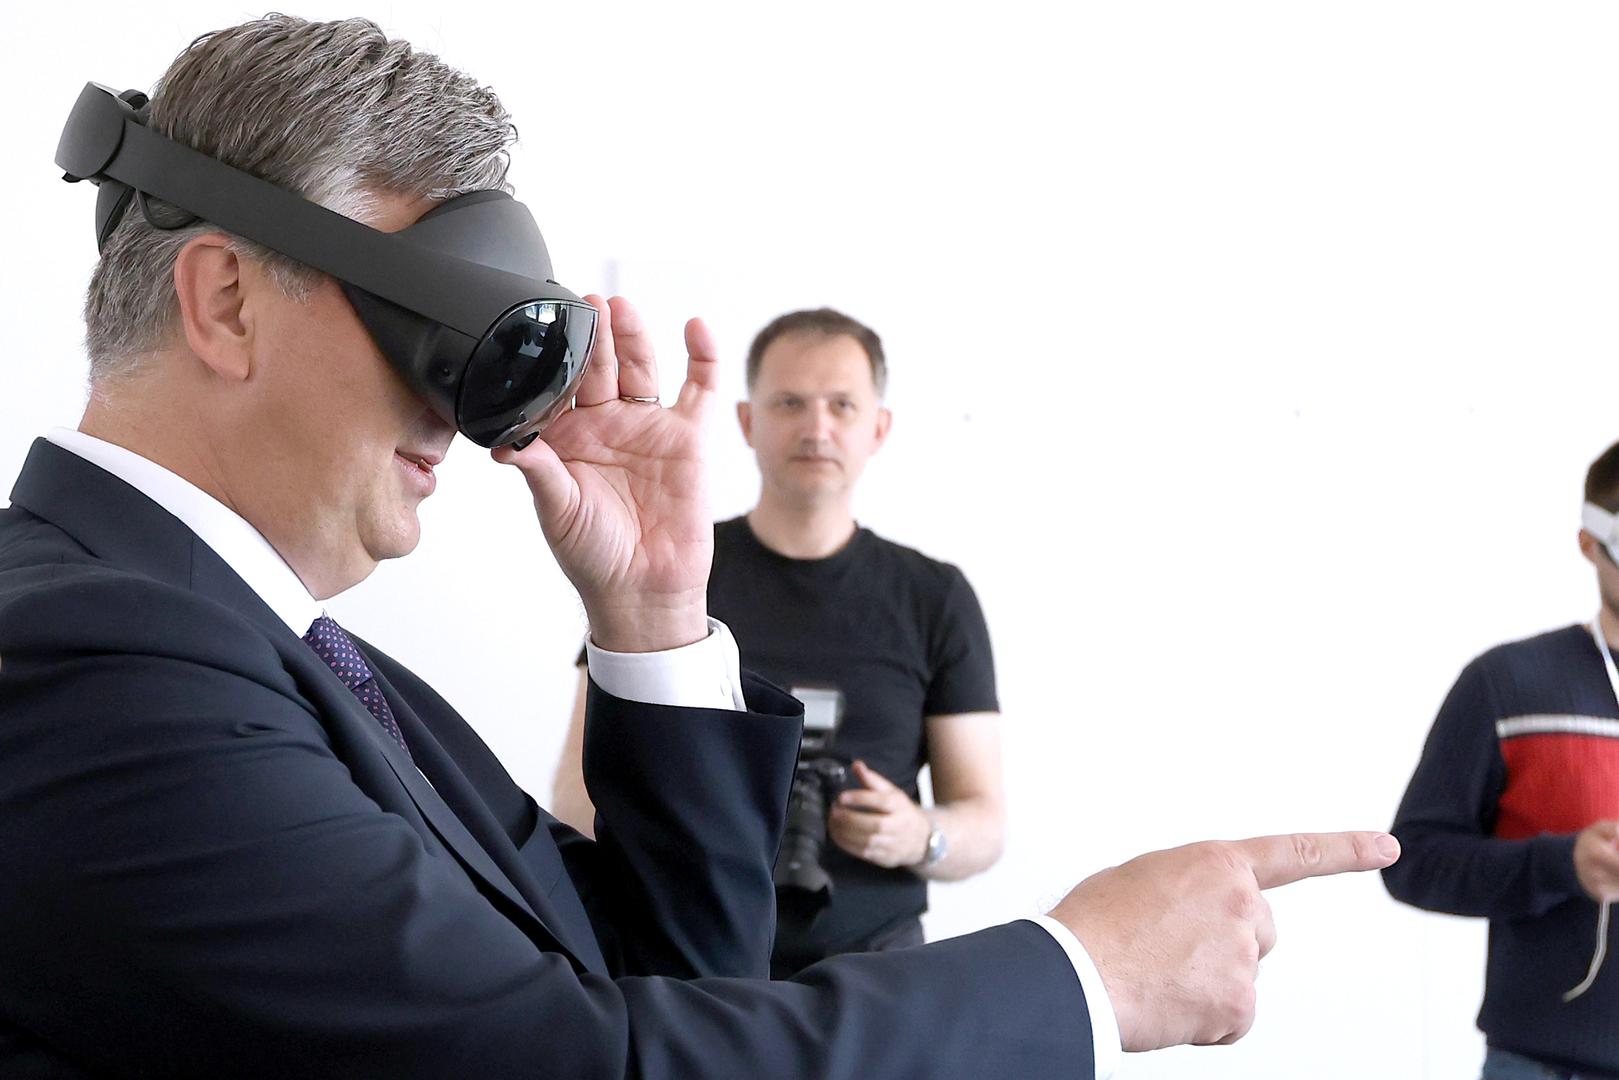 Za vrijeme posjeta imao je priliku isprobati VR naočale.Nakon što su razriješene tehničke poteškoće, čini se da se premijeru svidjela virtualna stvarnost.